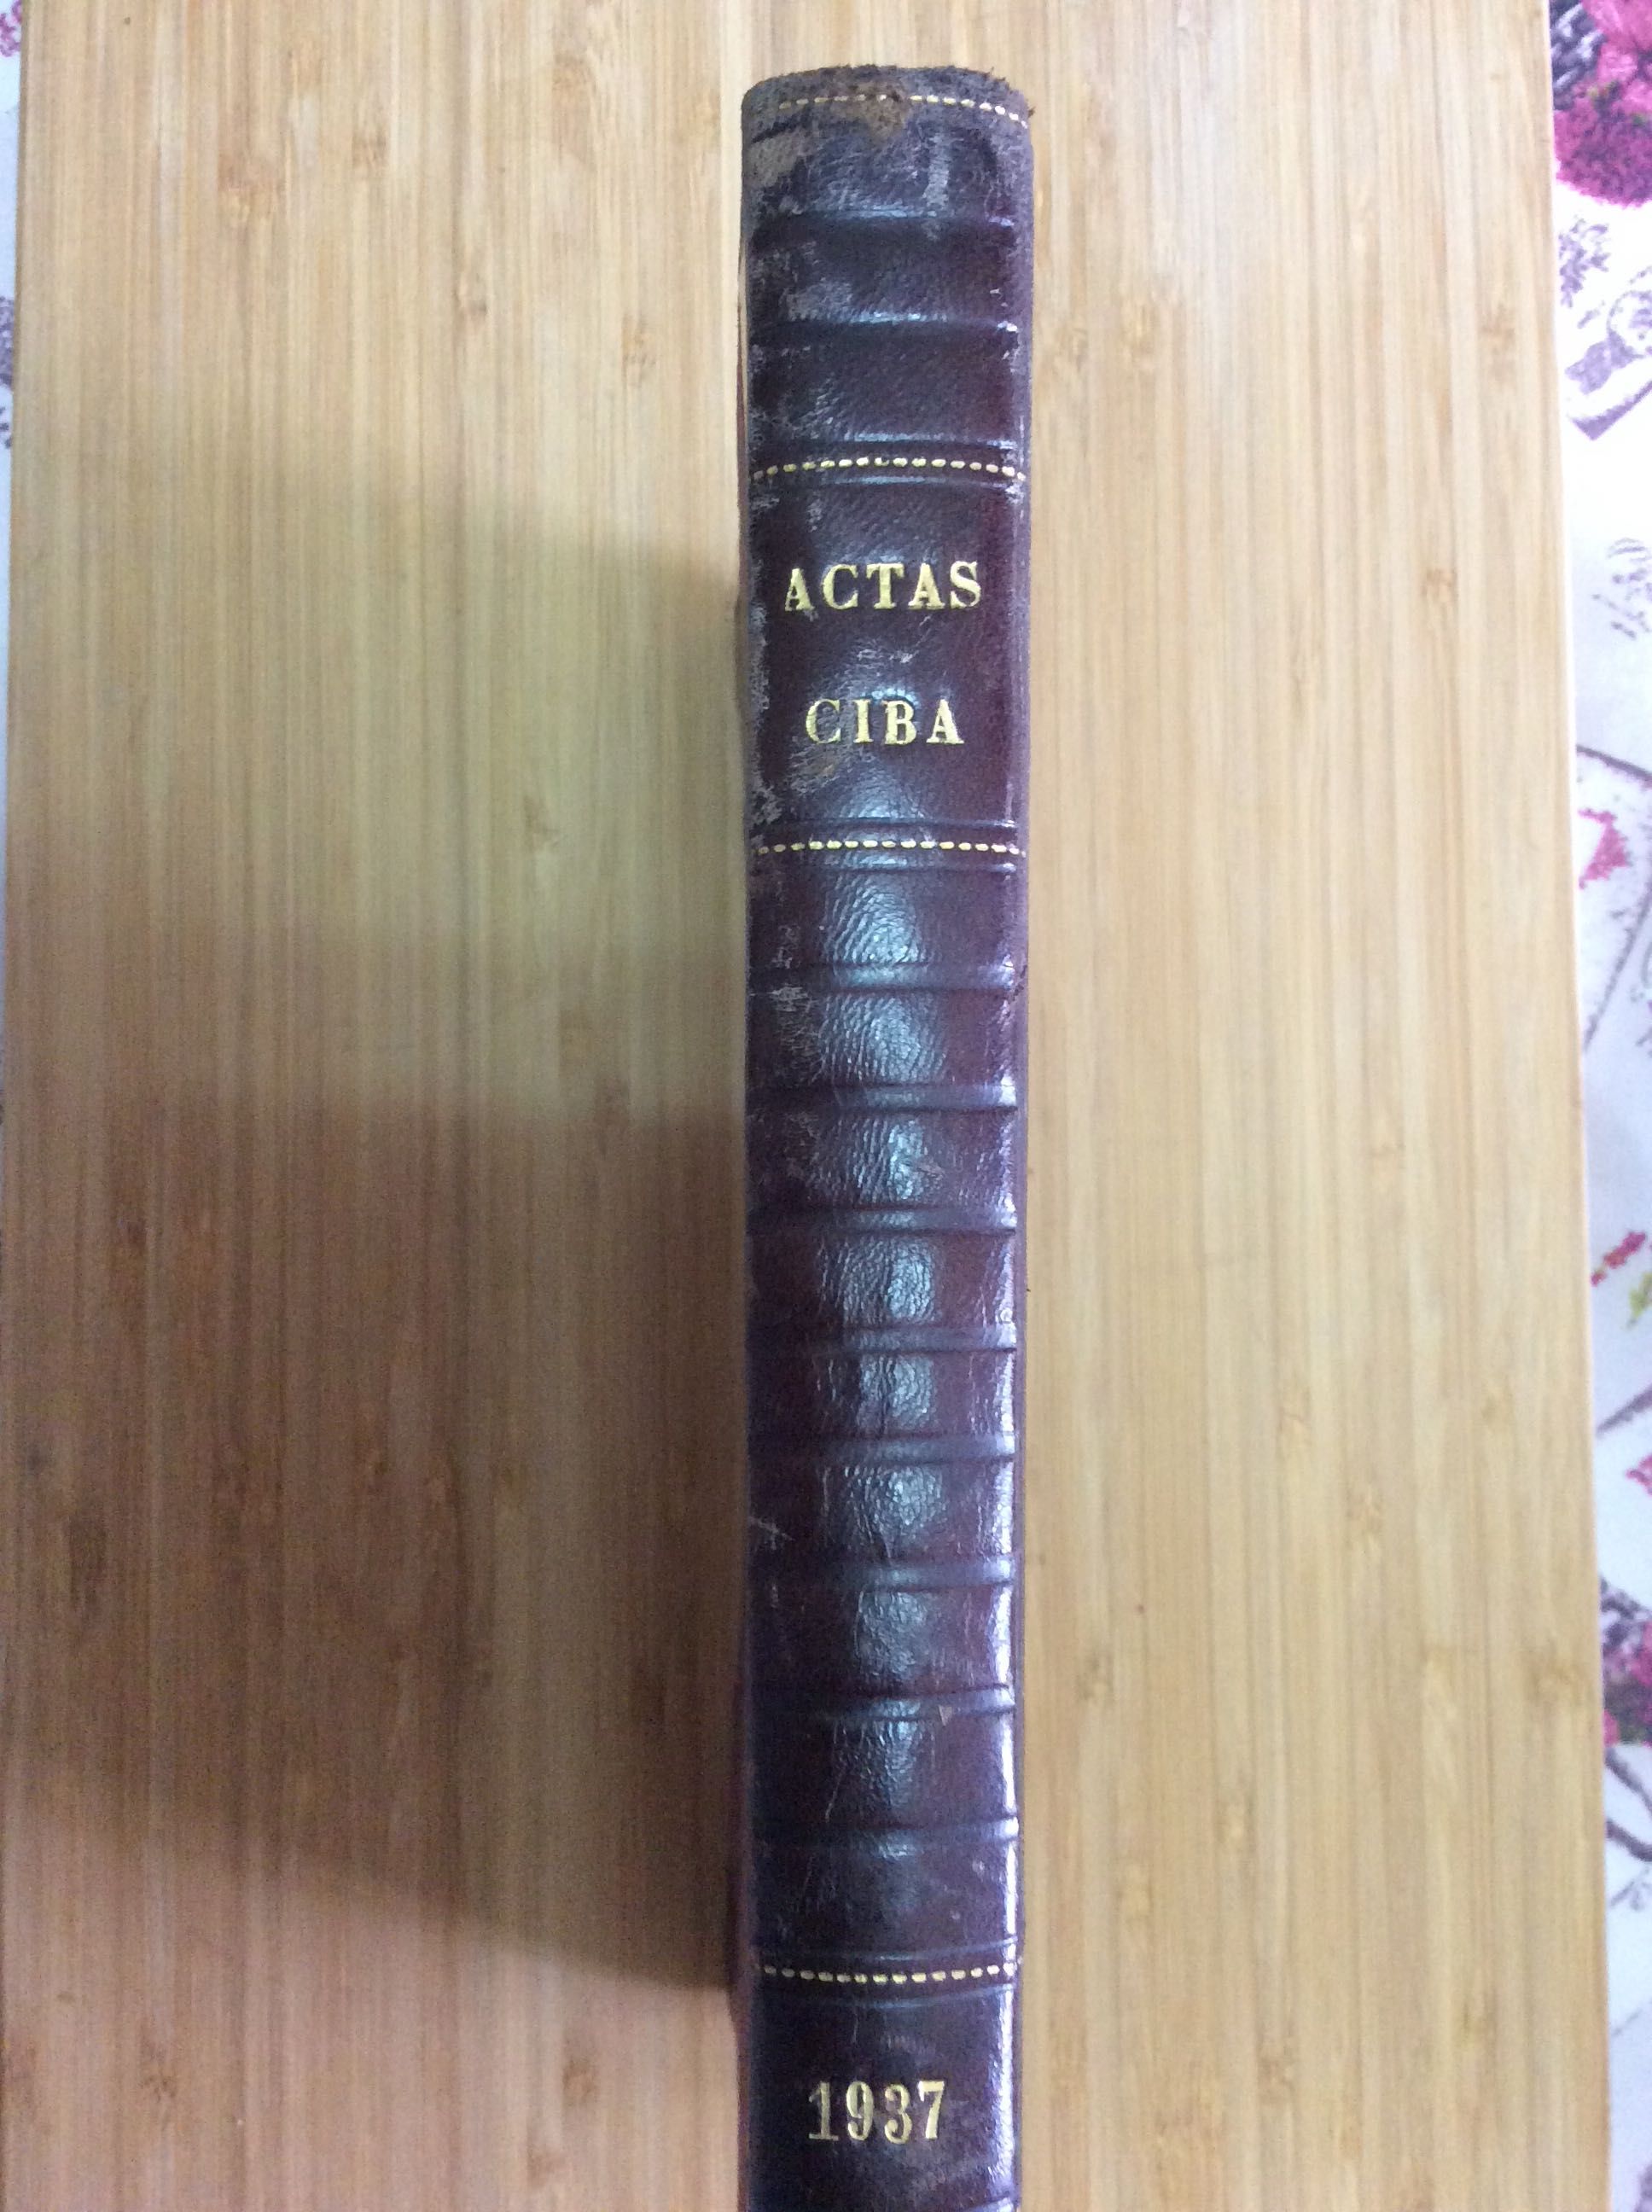 ACTAS CIBA 1937 encadernação bial